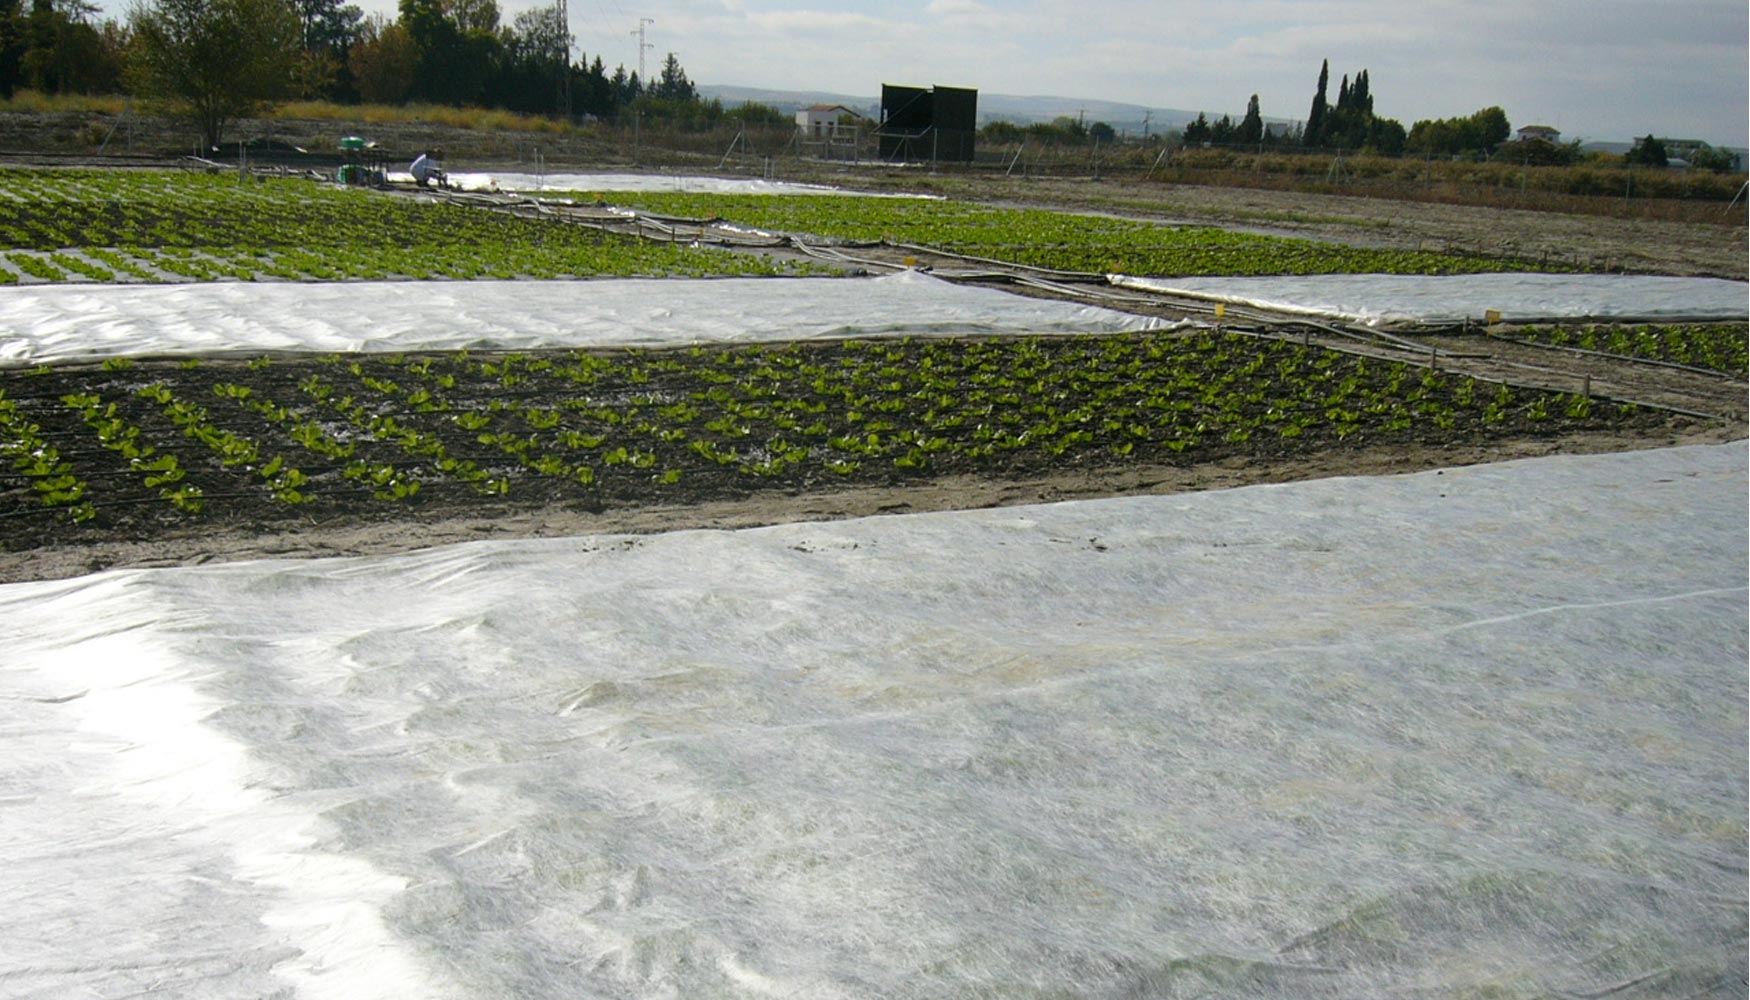 Cultivo de lechuga sobre acolchado plstico cubierto con agrotextil